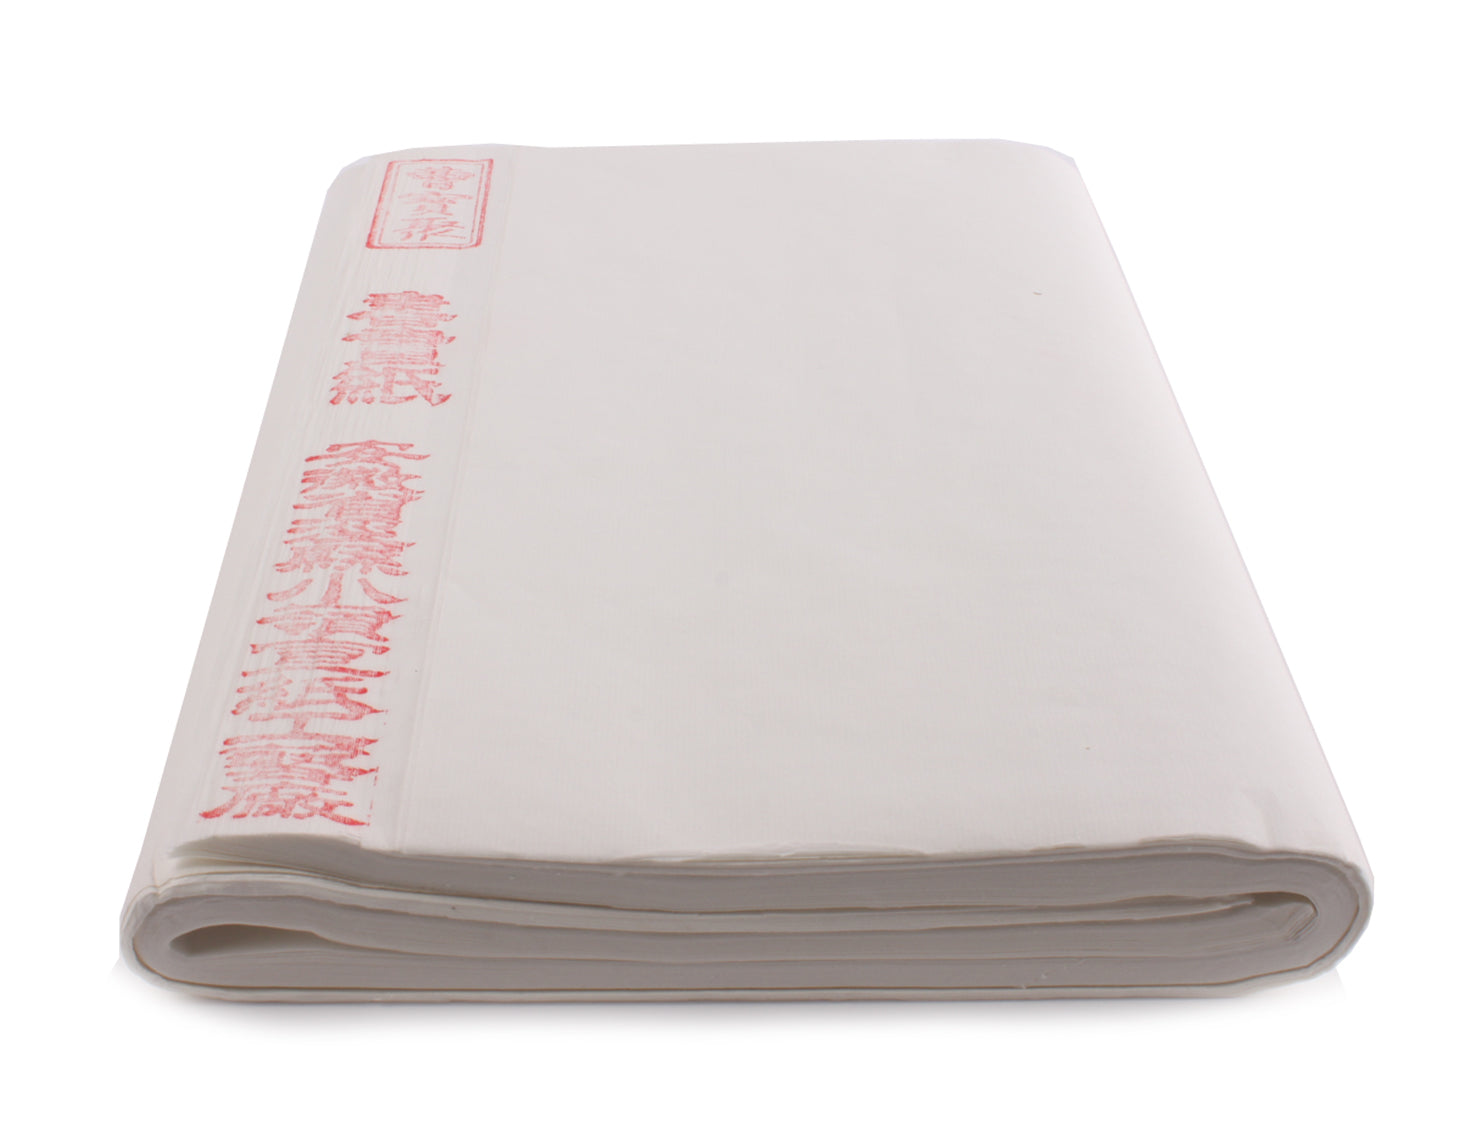 Xuan Paper 